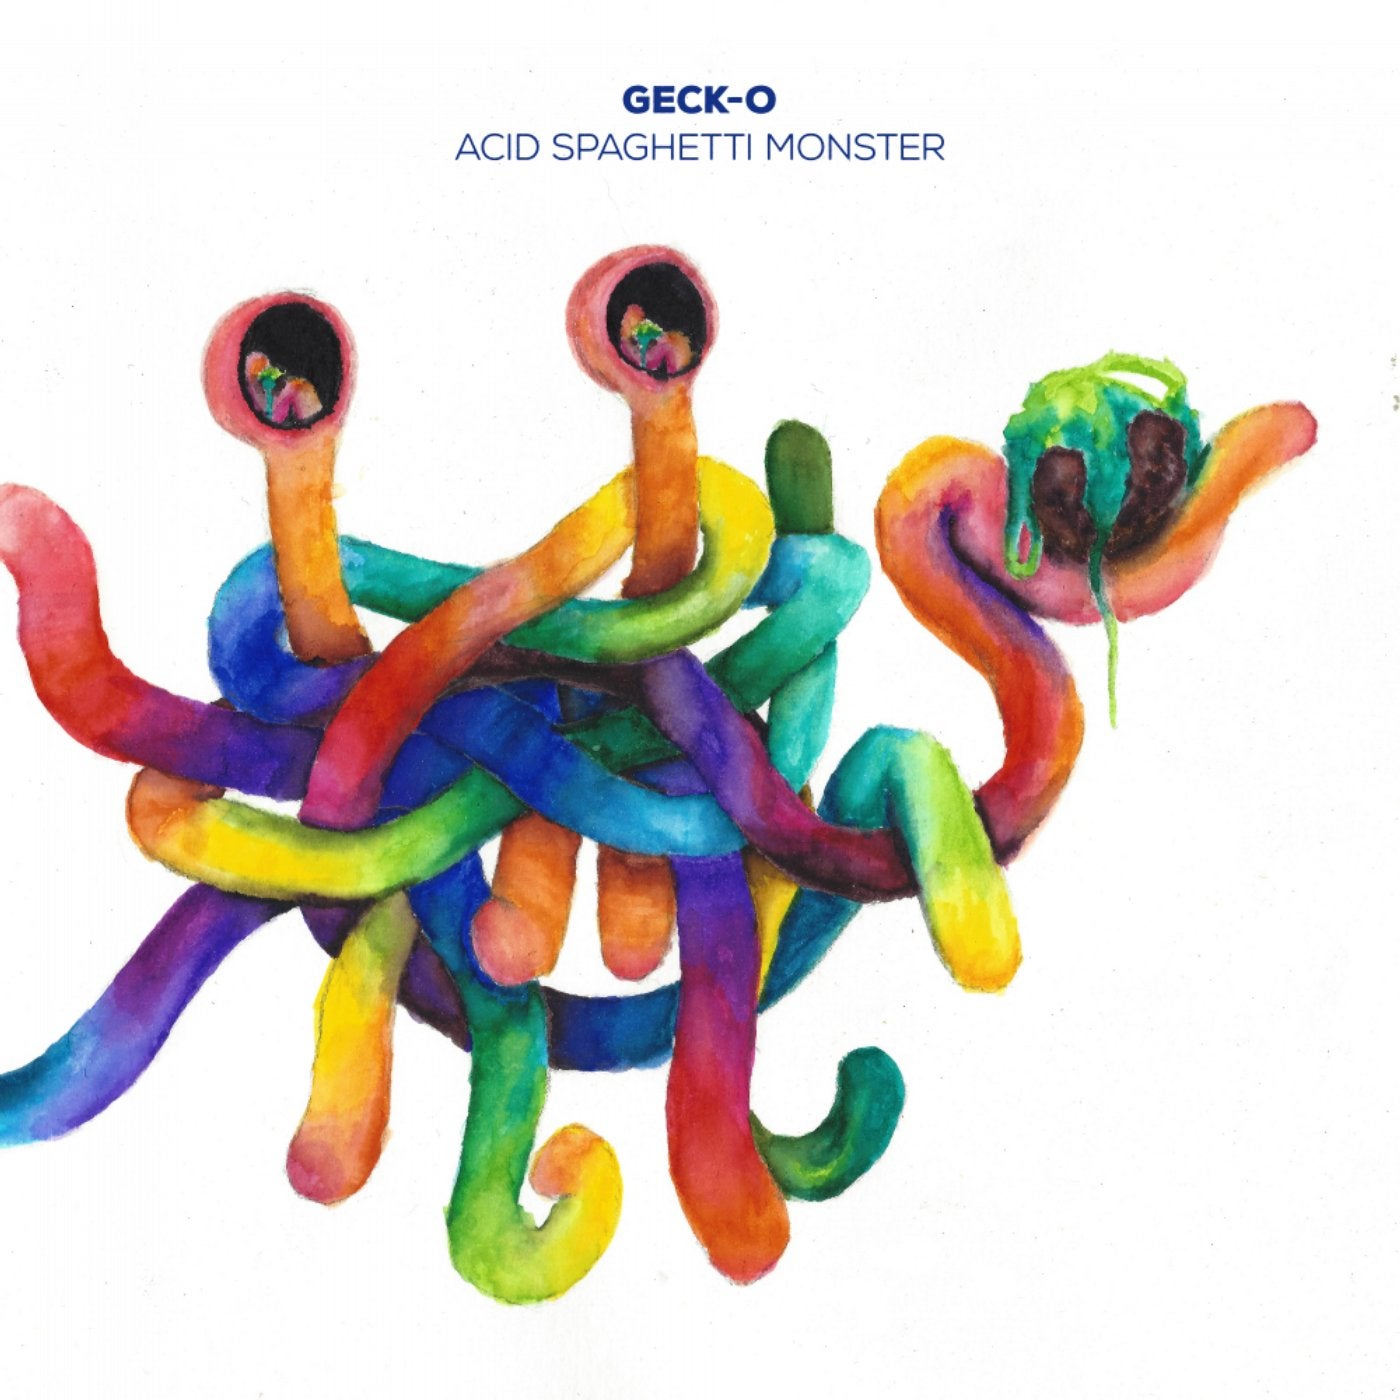 Acid Spaghetti Monster